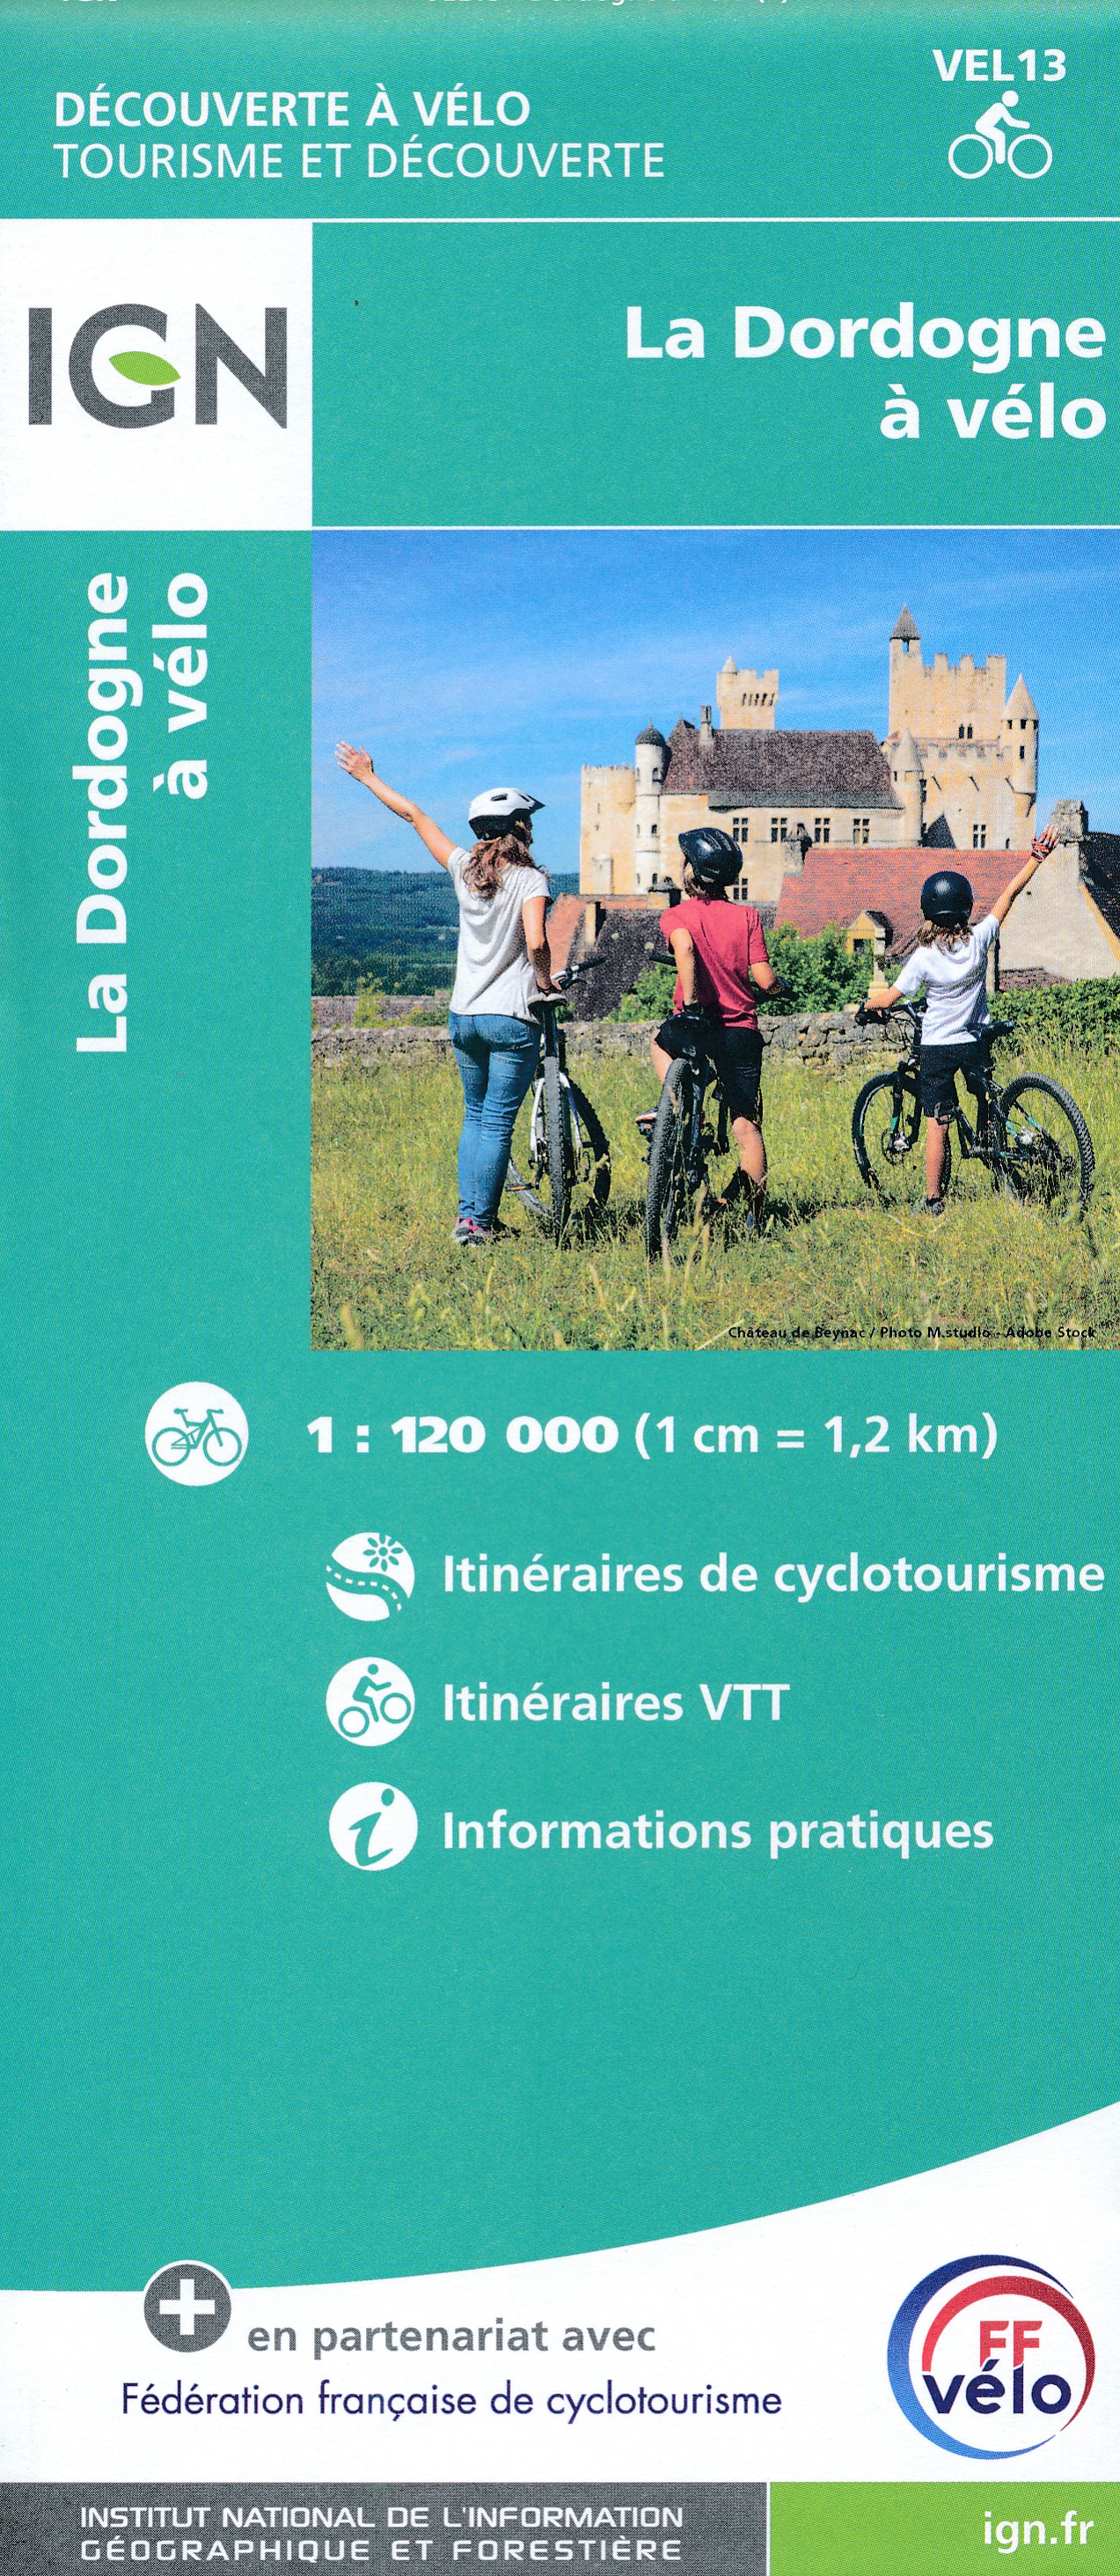 Online bestellen: Fietskaart VEL13 Velo La Dordogne a Velo | IGN - Institut Géographique National